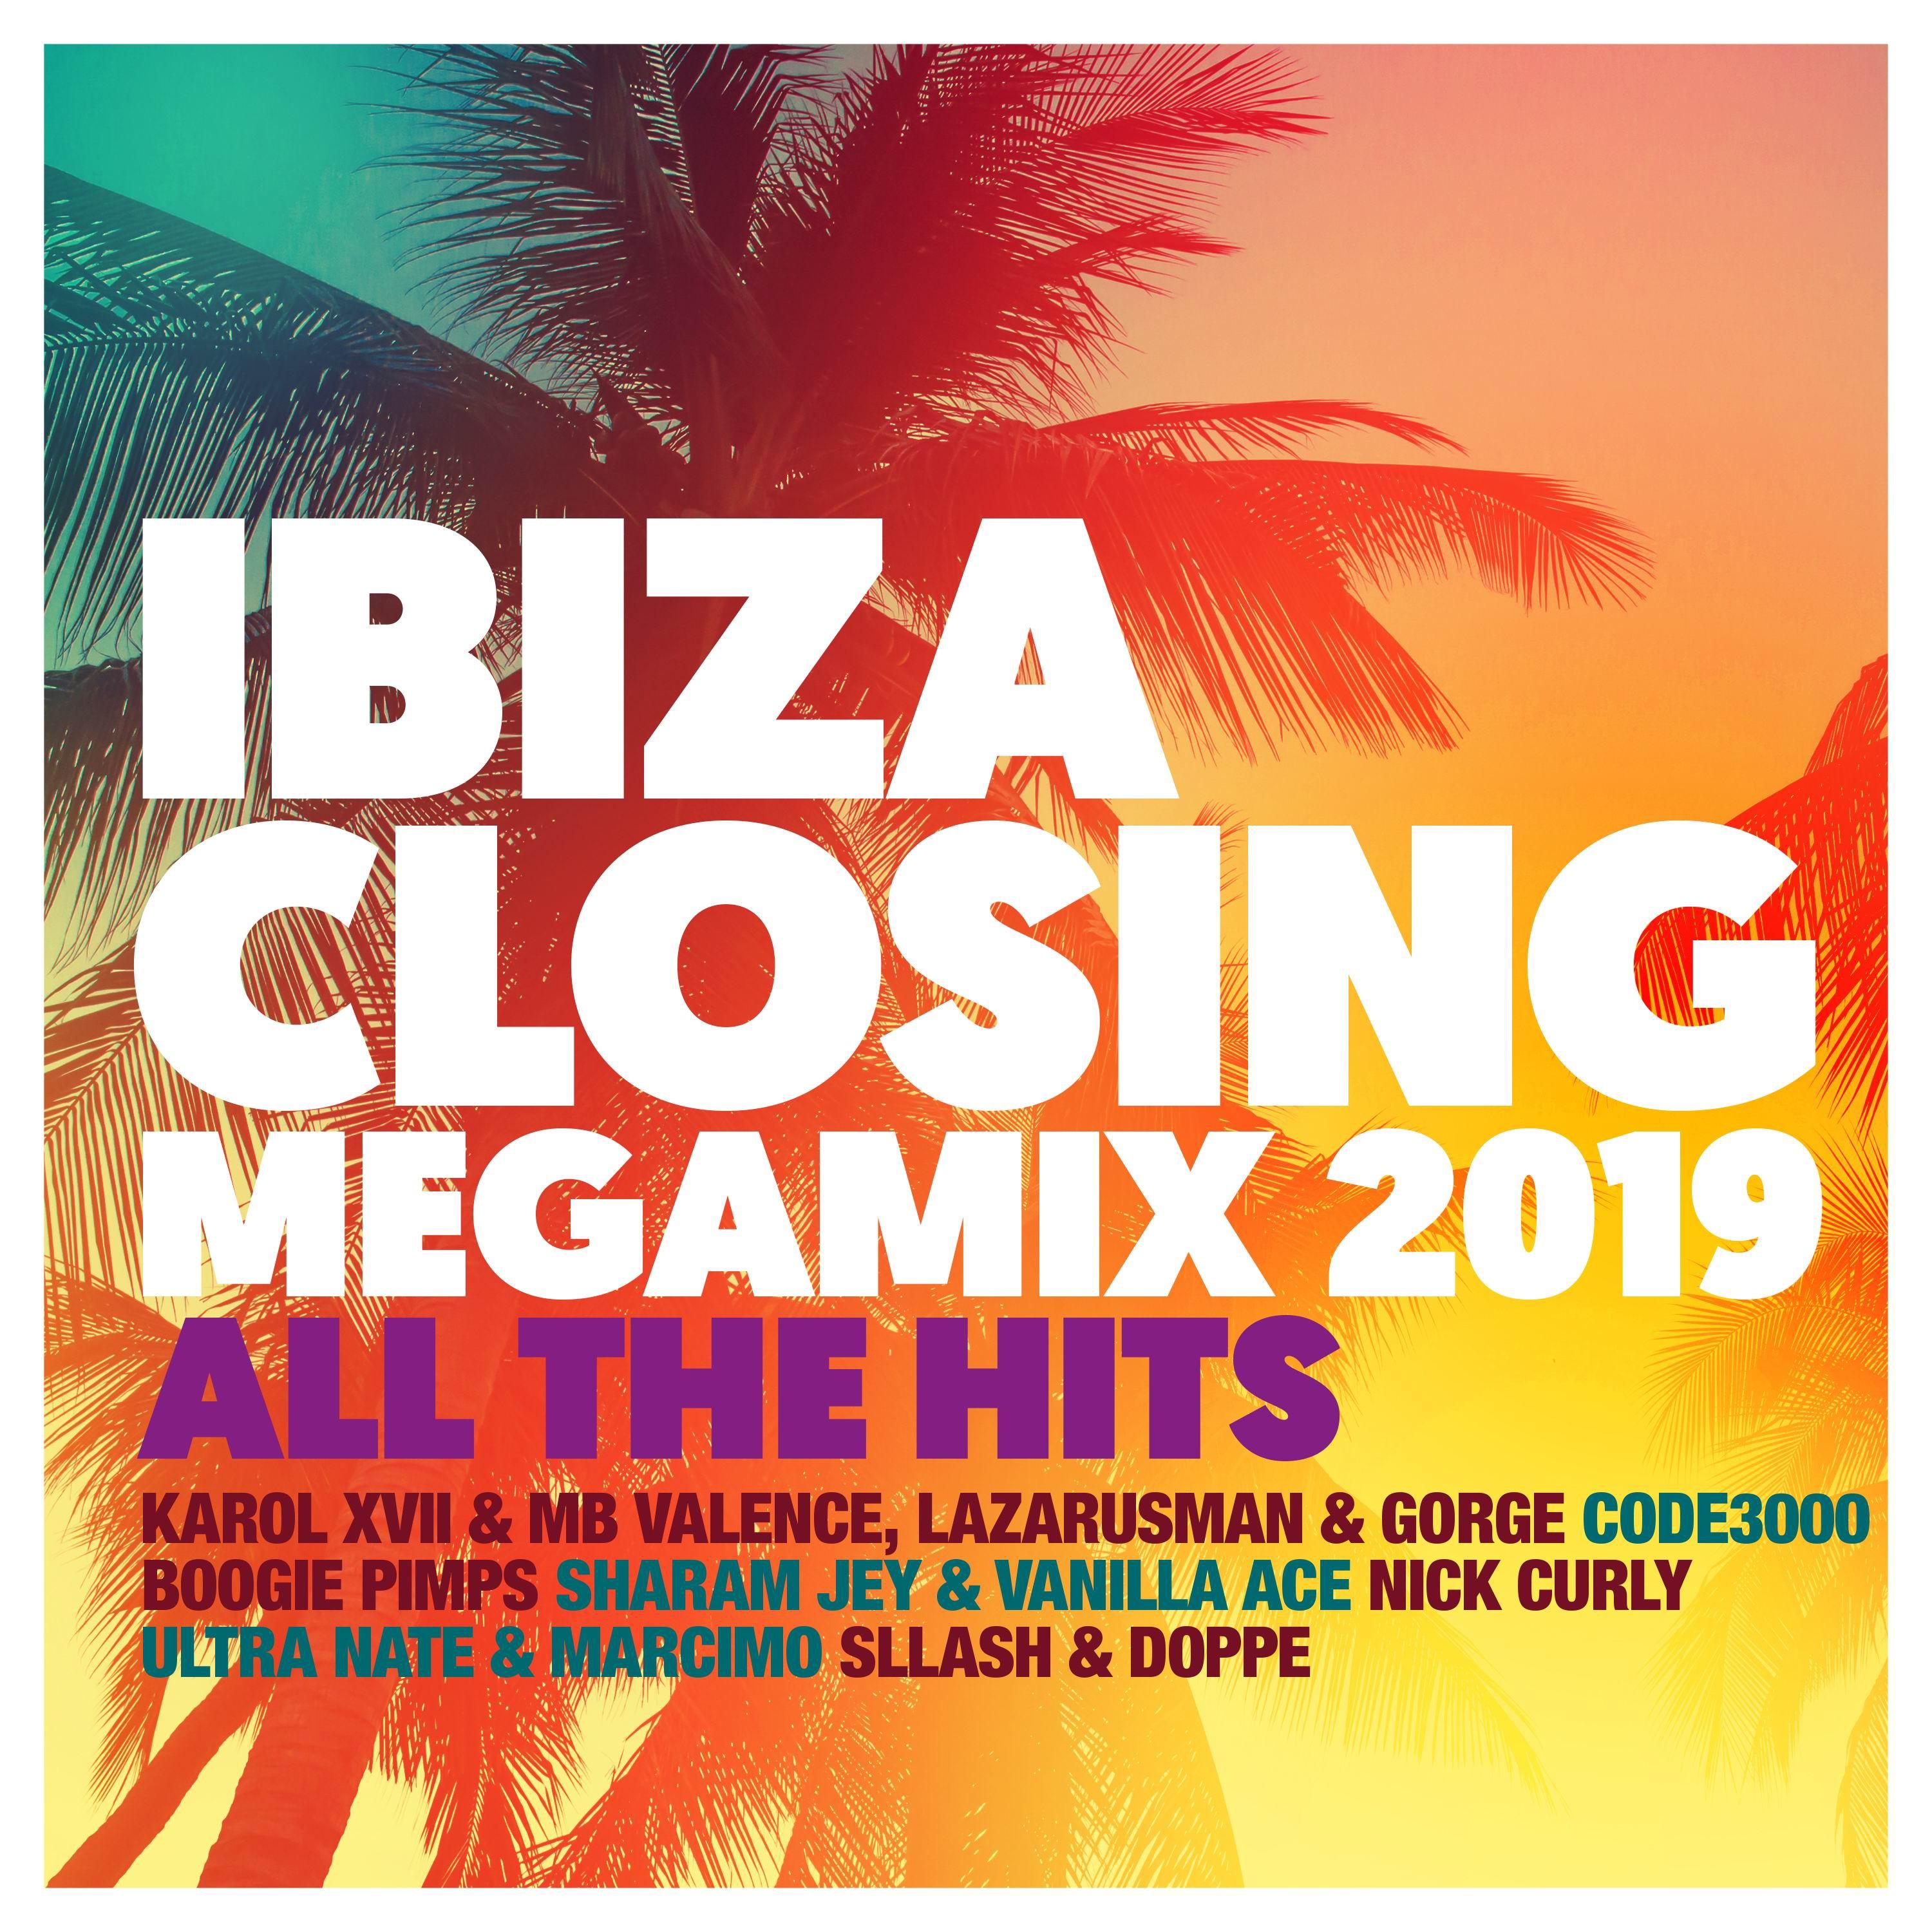 Ibiza Closing Megamix 2019 - The Mix, Pt.1